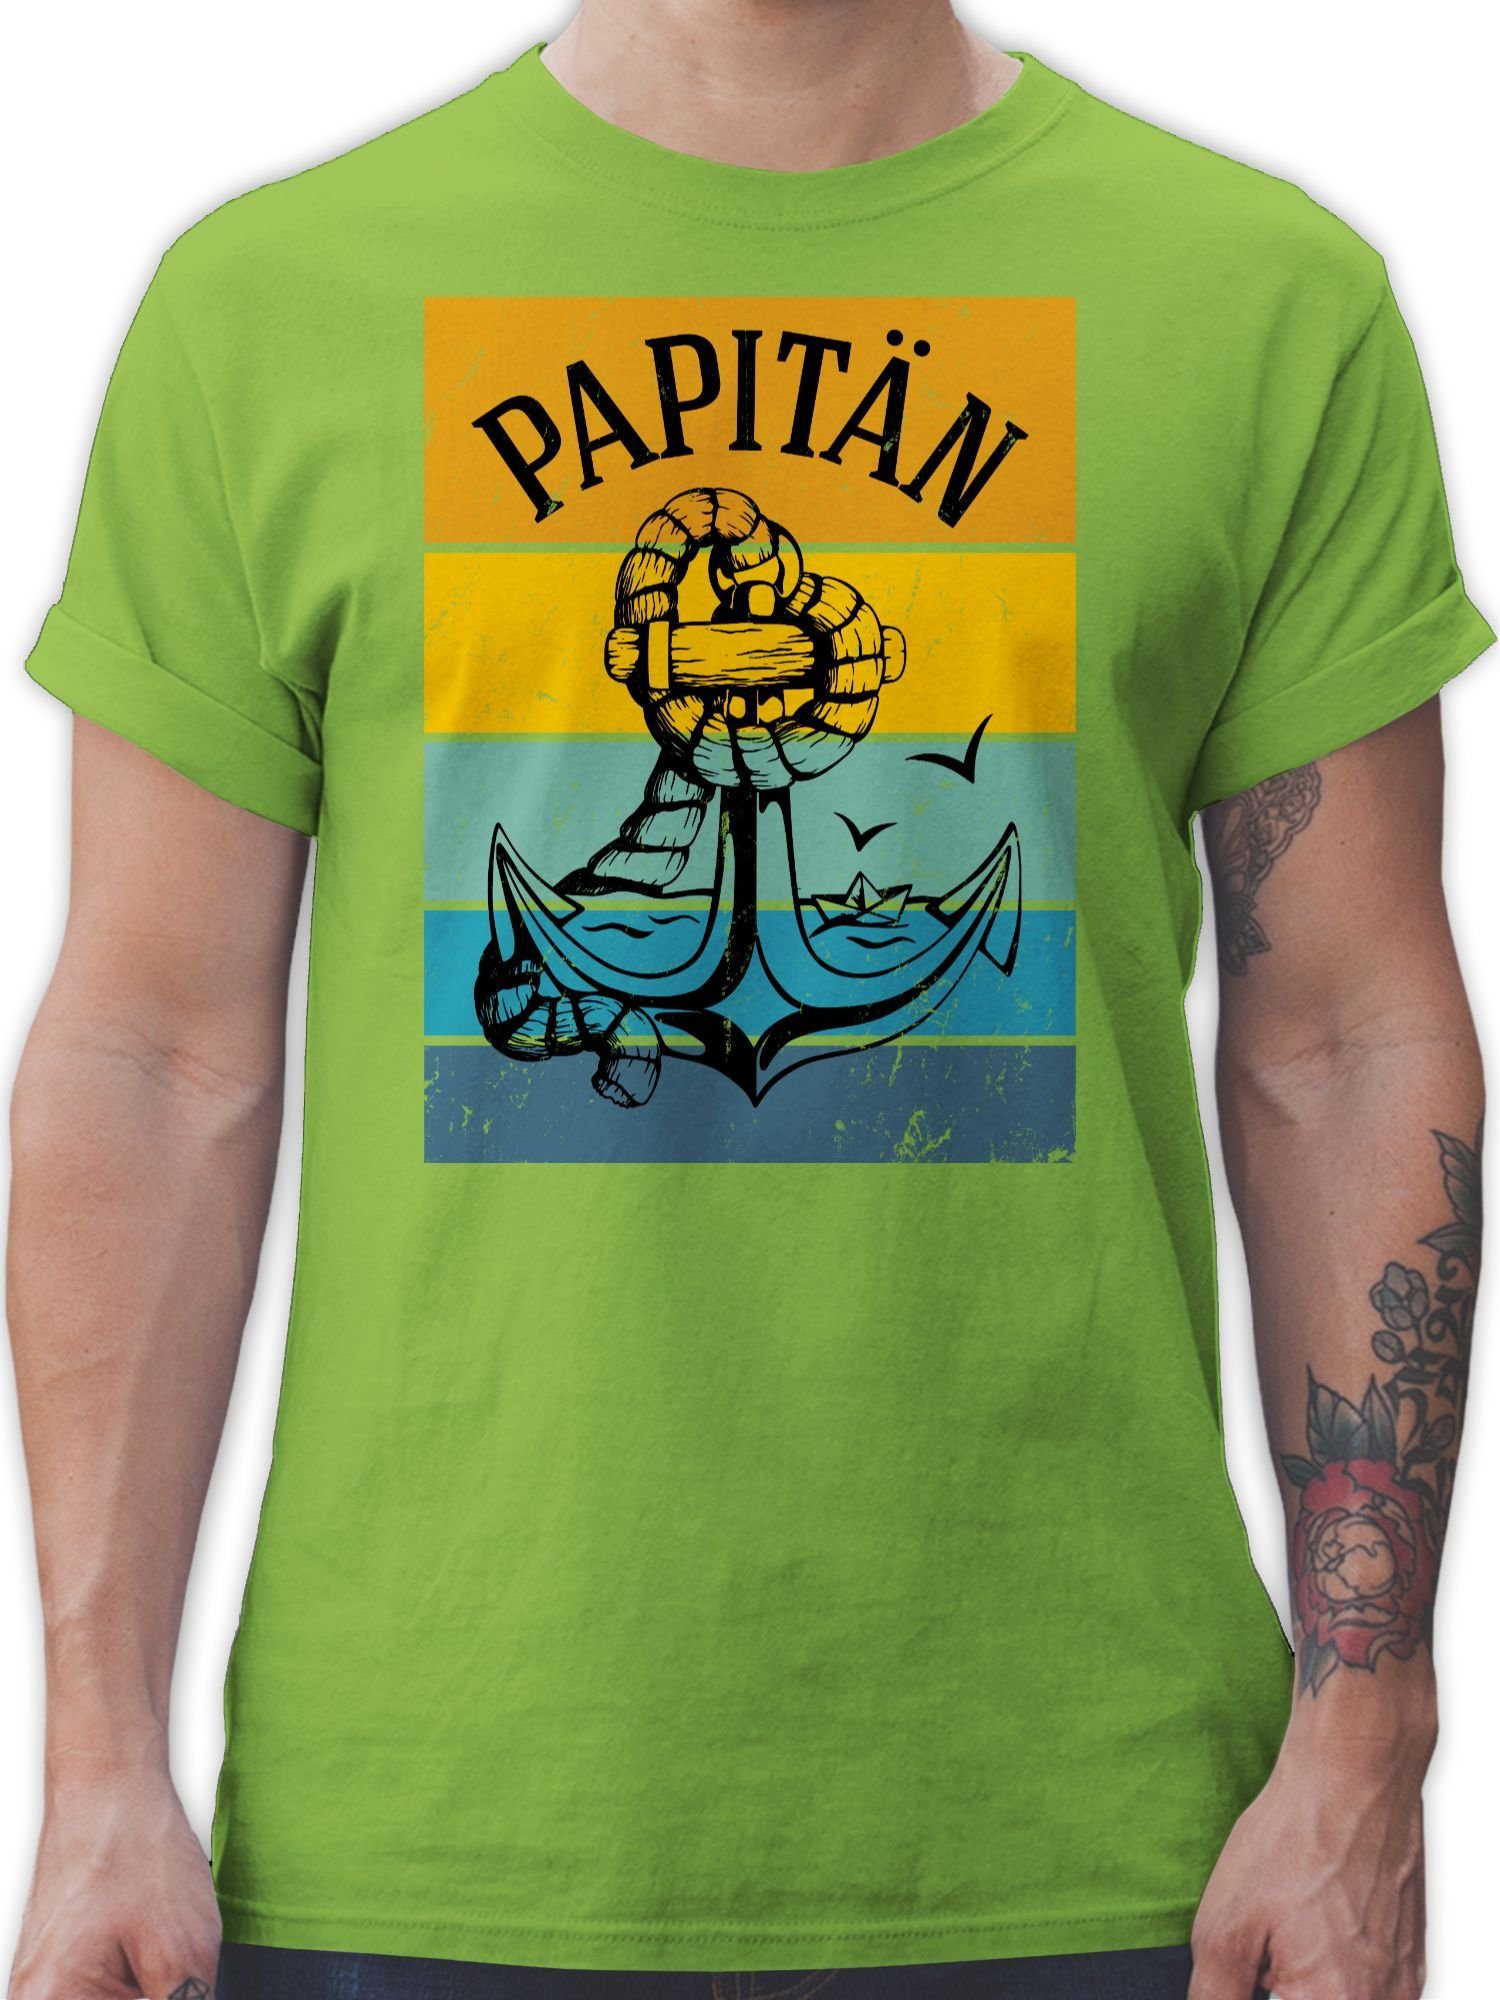 T-Shirt für Anker Hellgrün Papitän Vatertag 02 Shirtracer Geschenk Papa